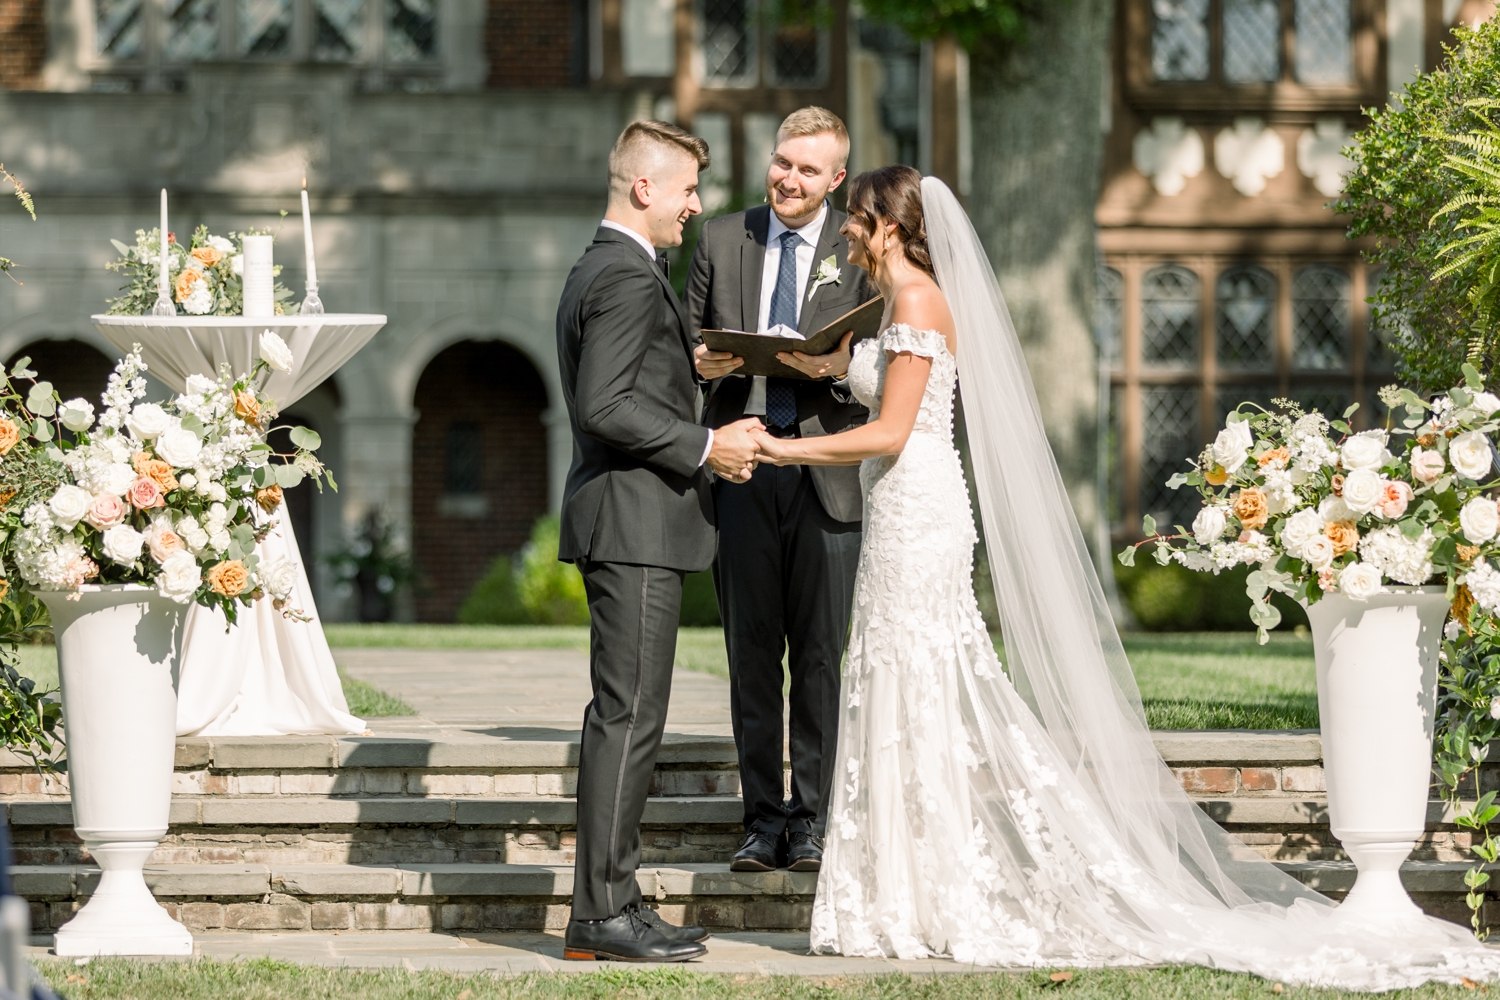 Wedding Ceremony at Pinecroft at Crosley Estate in Cincinnati